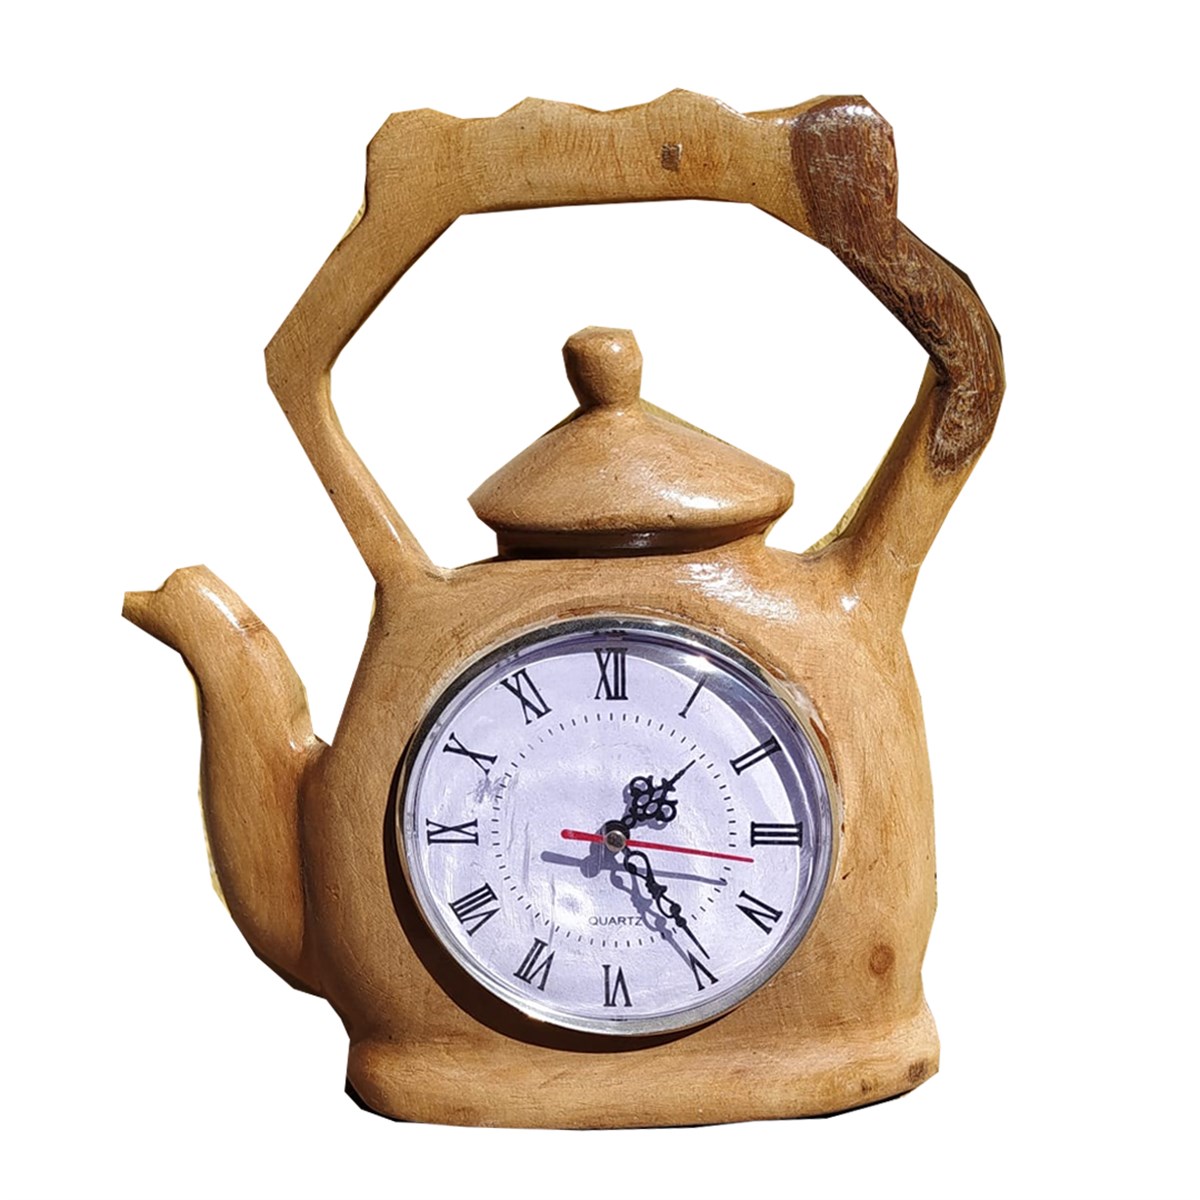 Çaydanlık Motifli Masaüstü Saat Ürün Modelleri, Fiyatları - AKBAK MARKET  ILGAZ